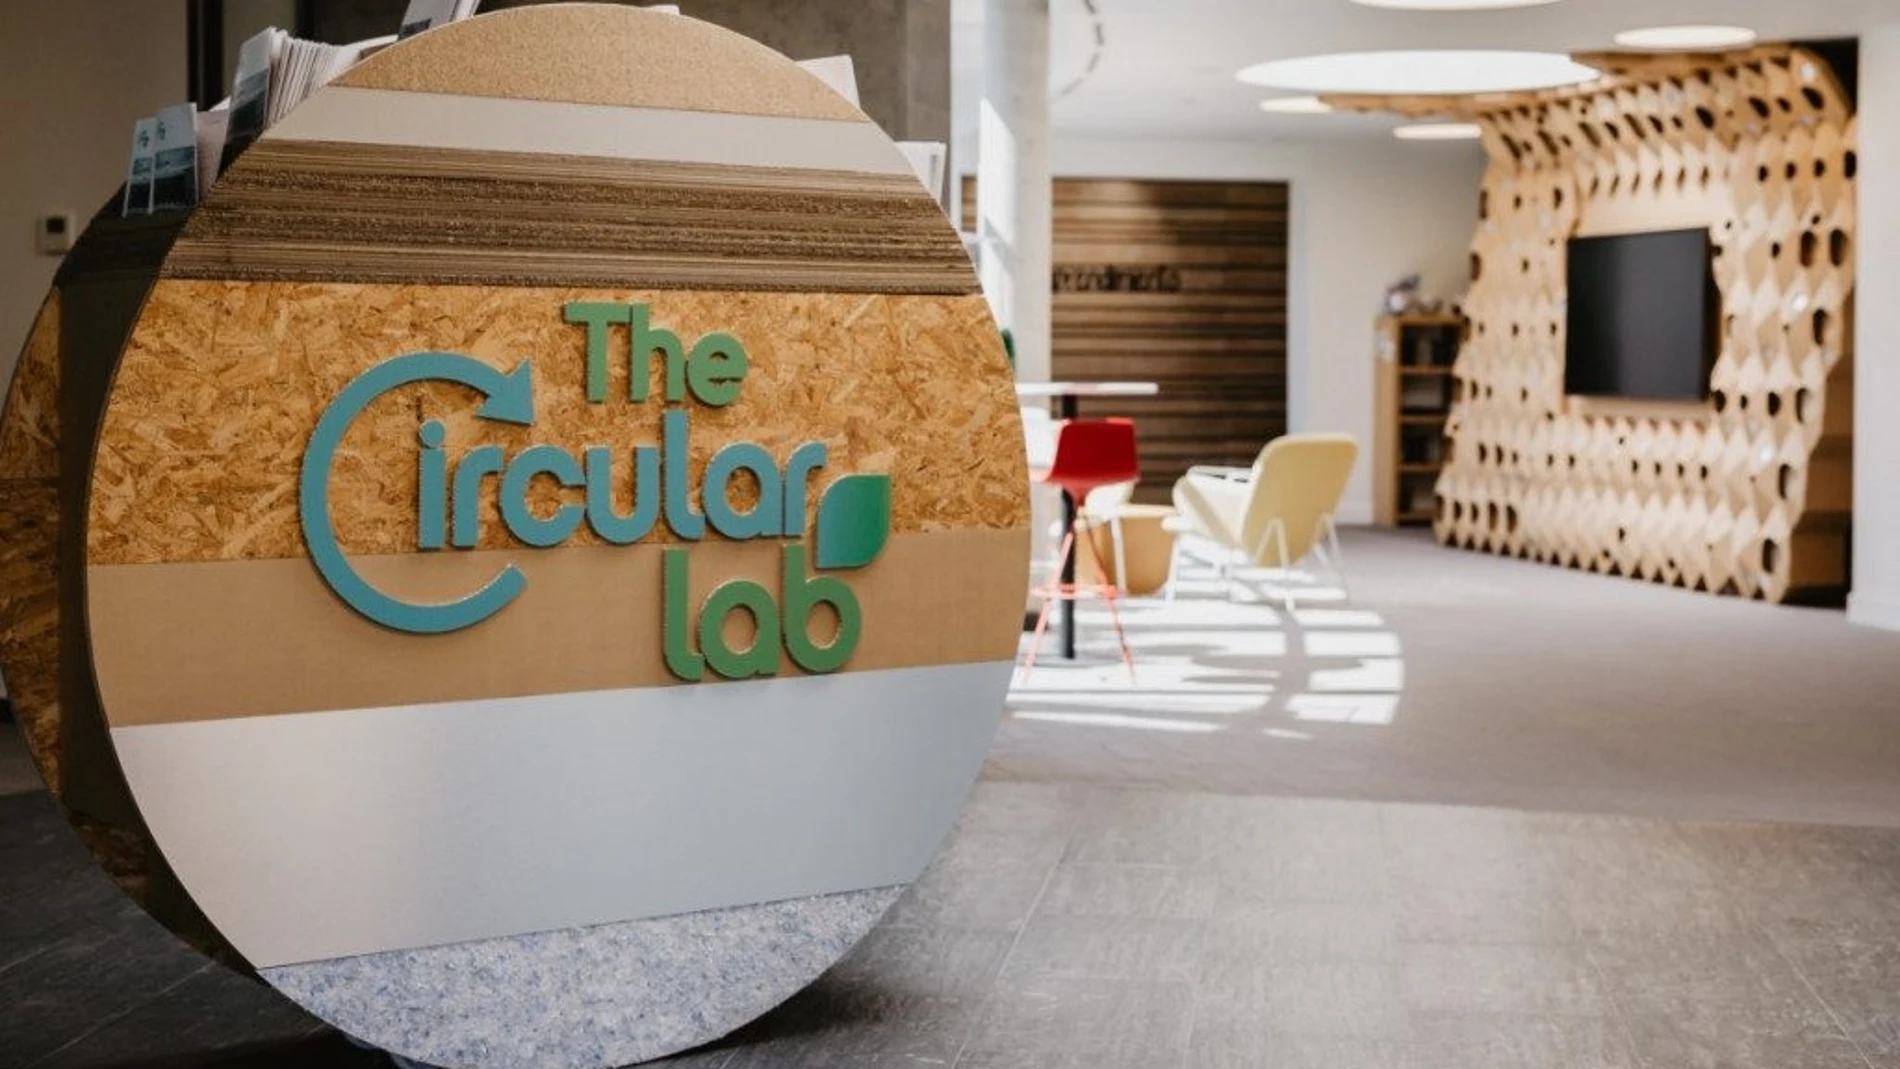 TheCircularLab, situado en Logroño, es el primer centro de innovación de economía circular de Europa.